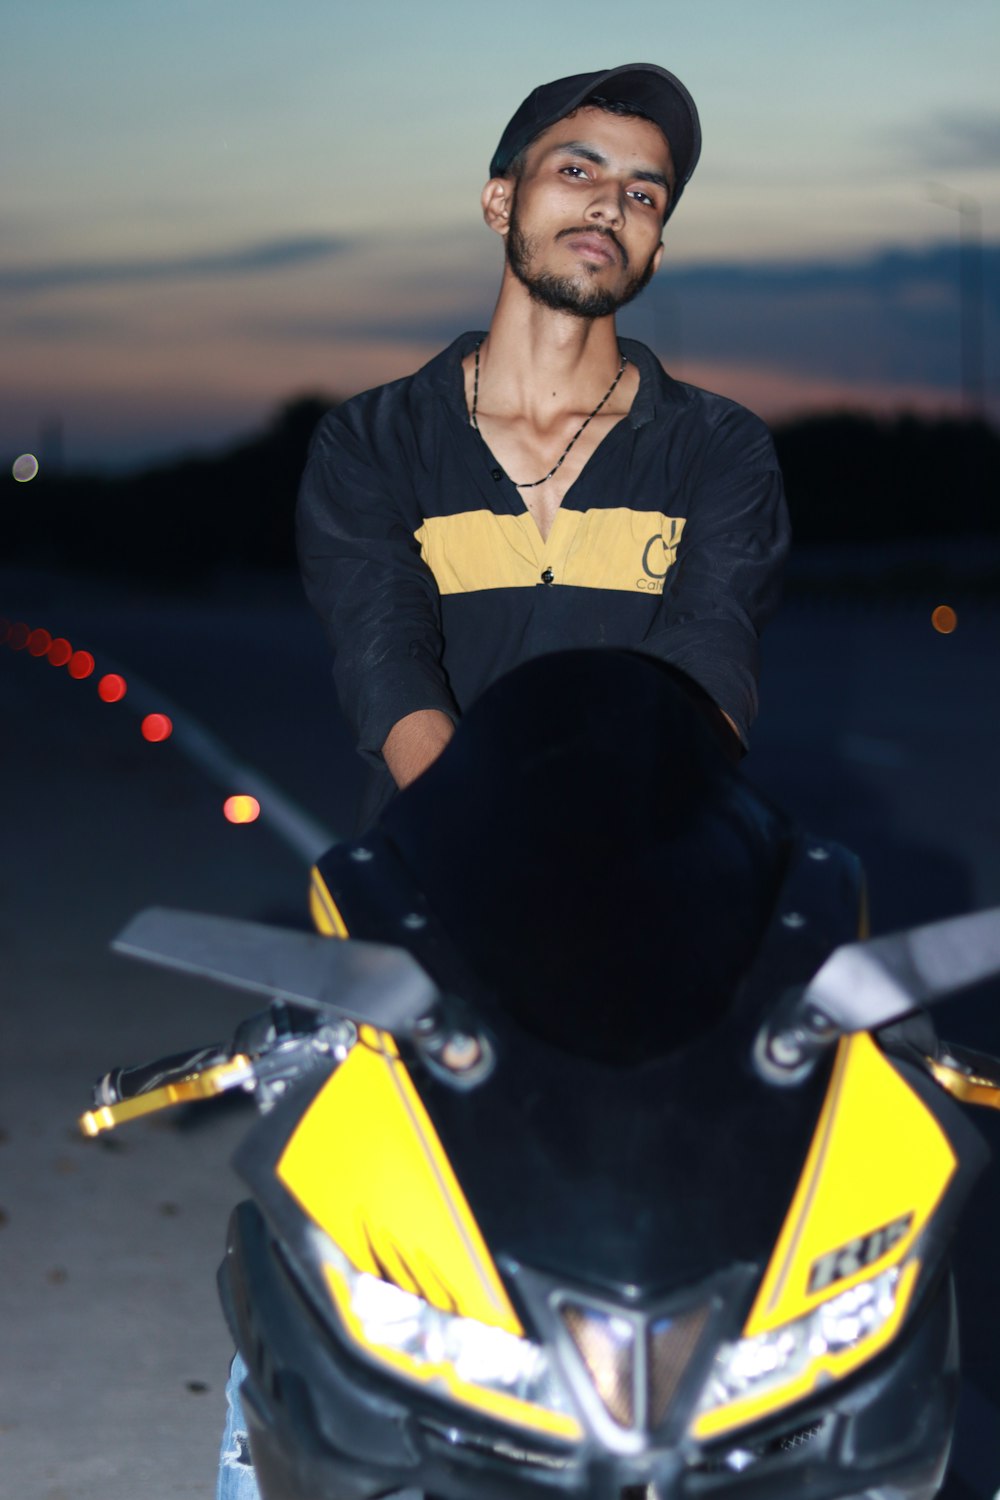 Ein Mann steht neben einem gelb-schwarzen Motorrad